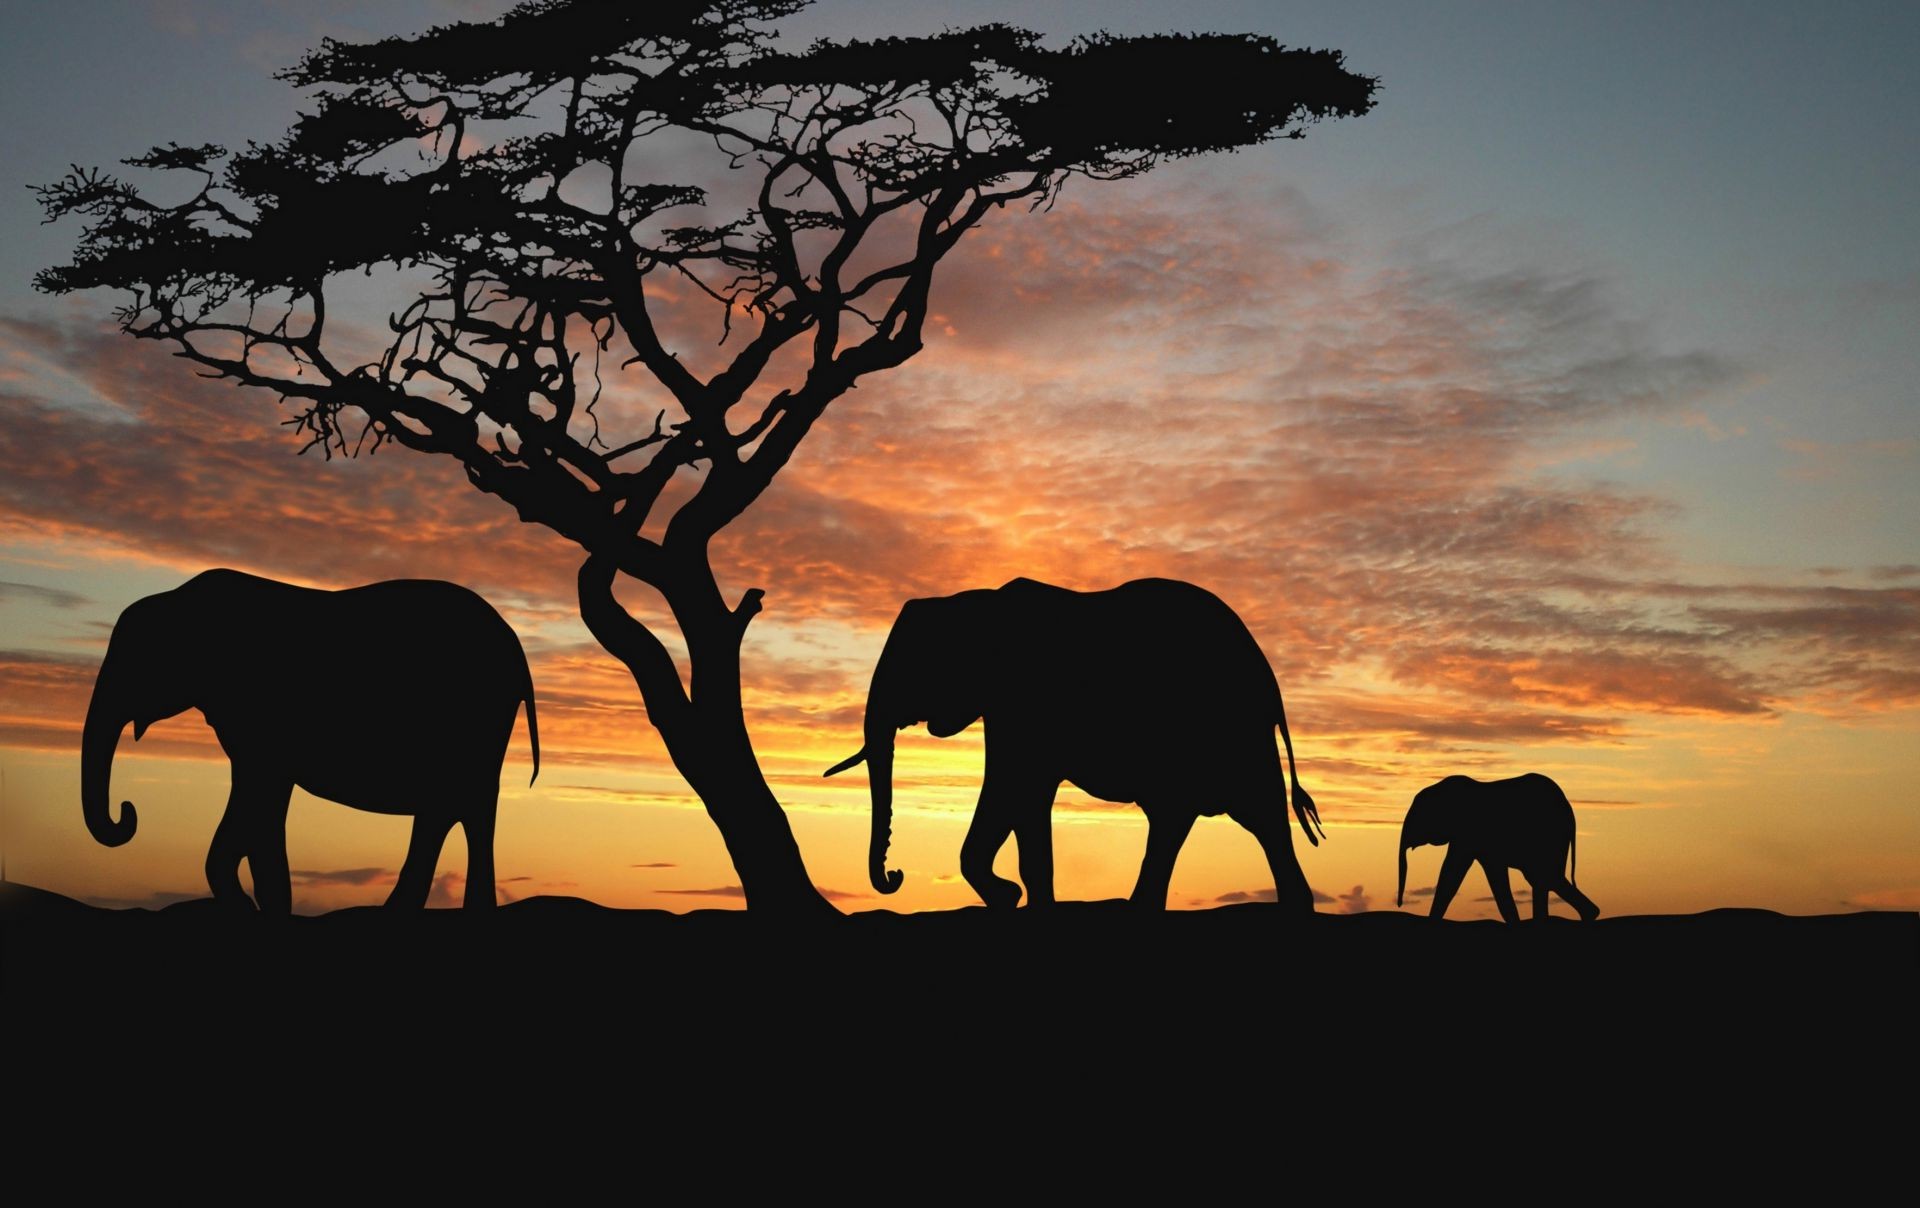 слоны закат силуэт млекопитающее вечером рассвет подсветкой слон сумрак дерево дикой природы небо на открытом воздухе пейзаж саванна солнце животное конница природа